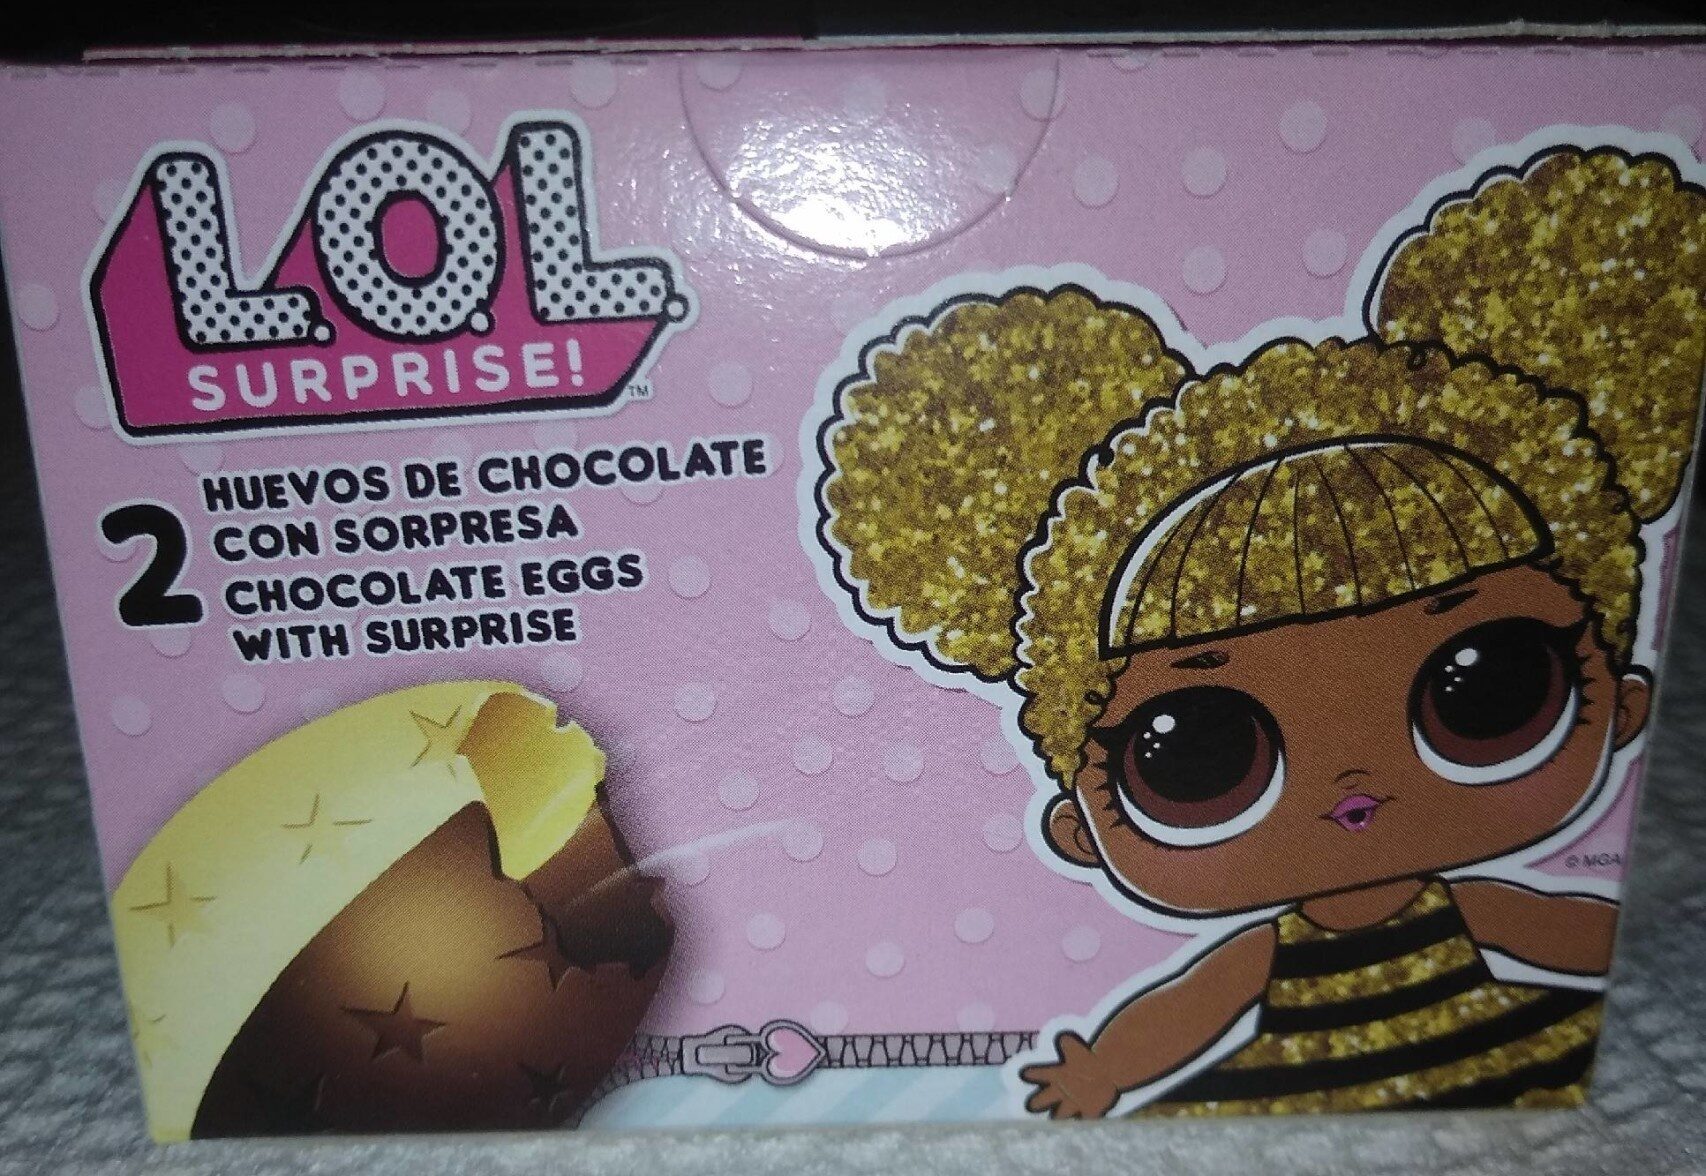 Huevos de chocolate - Product - es